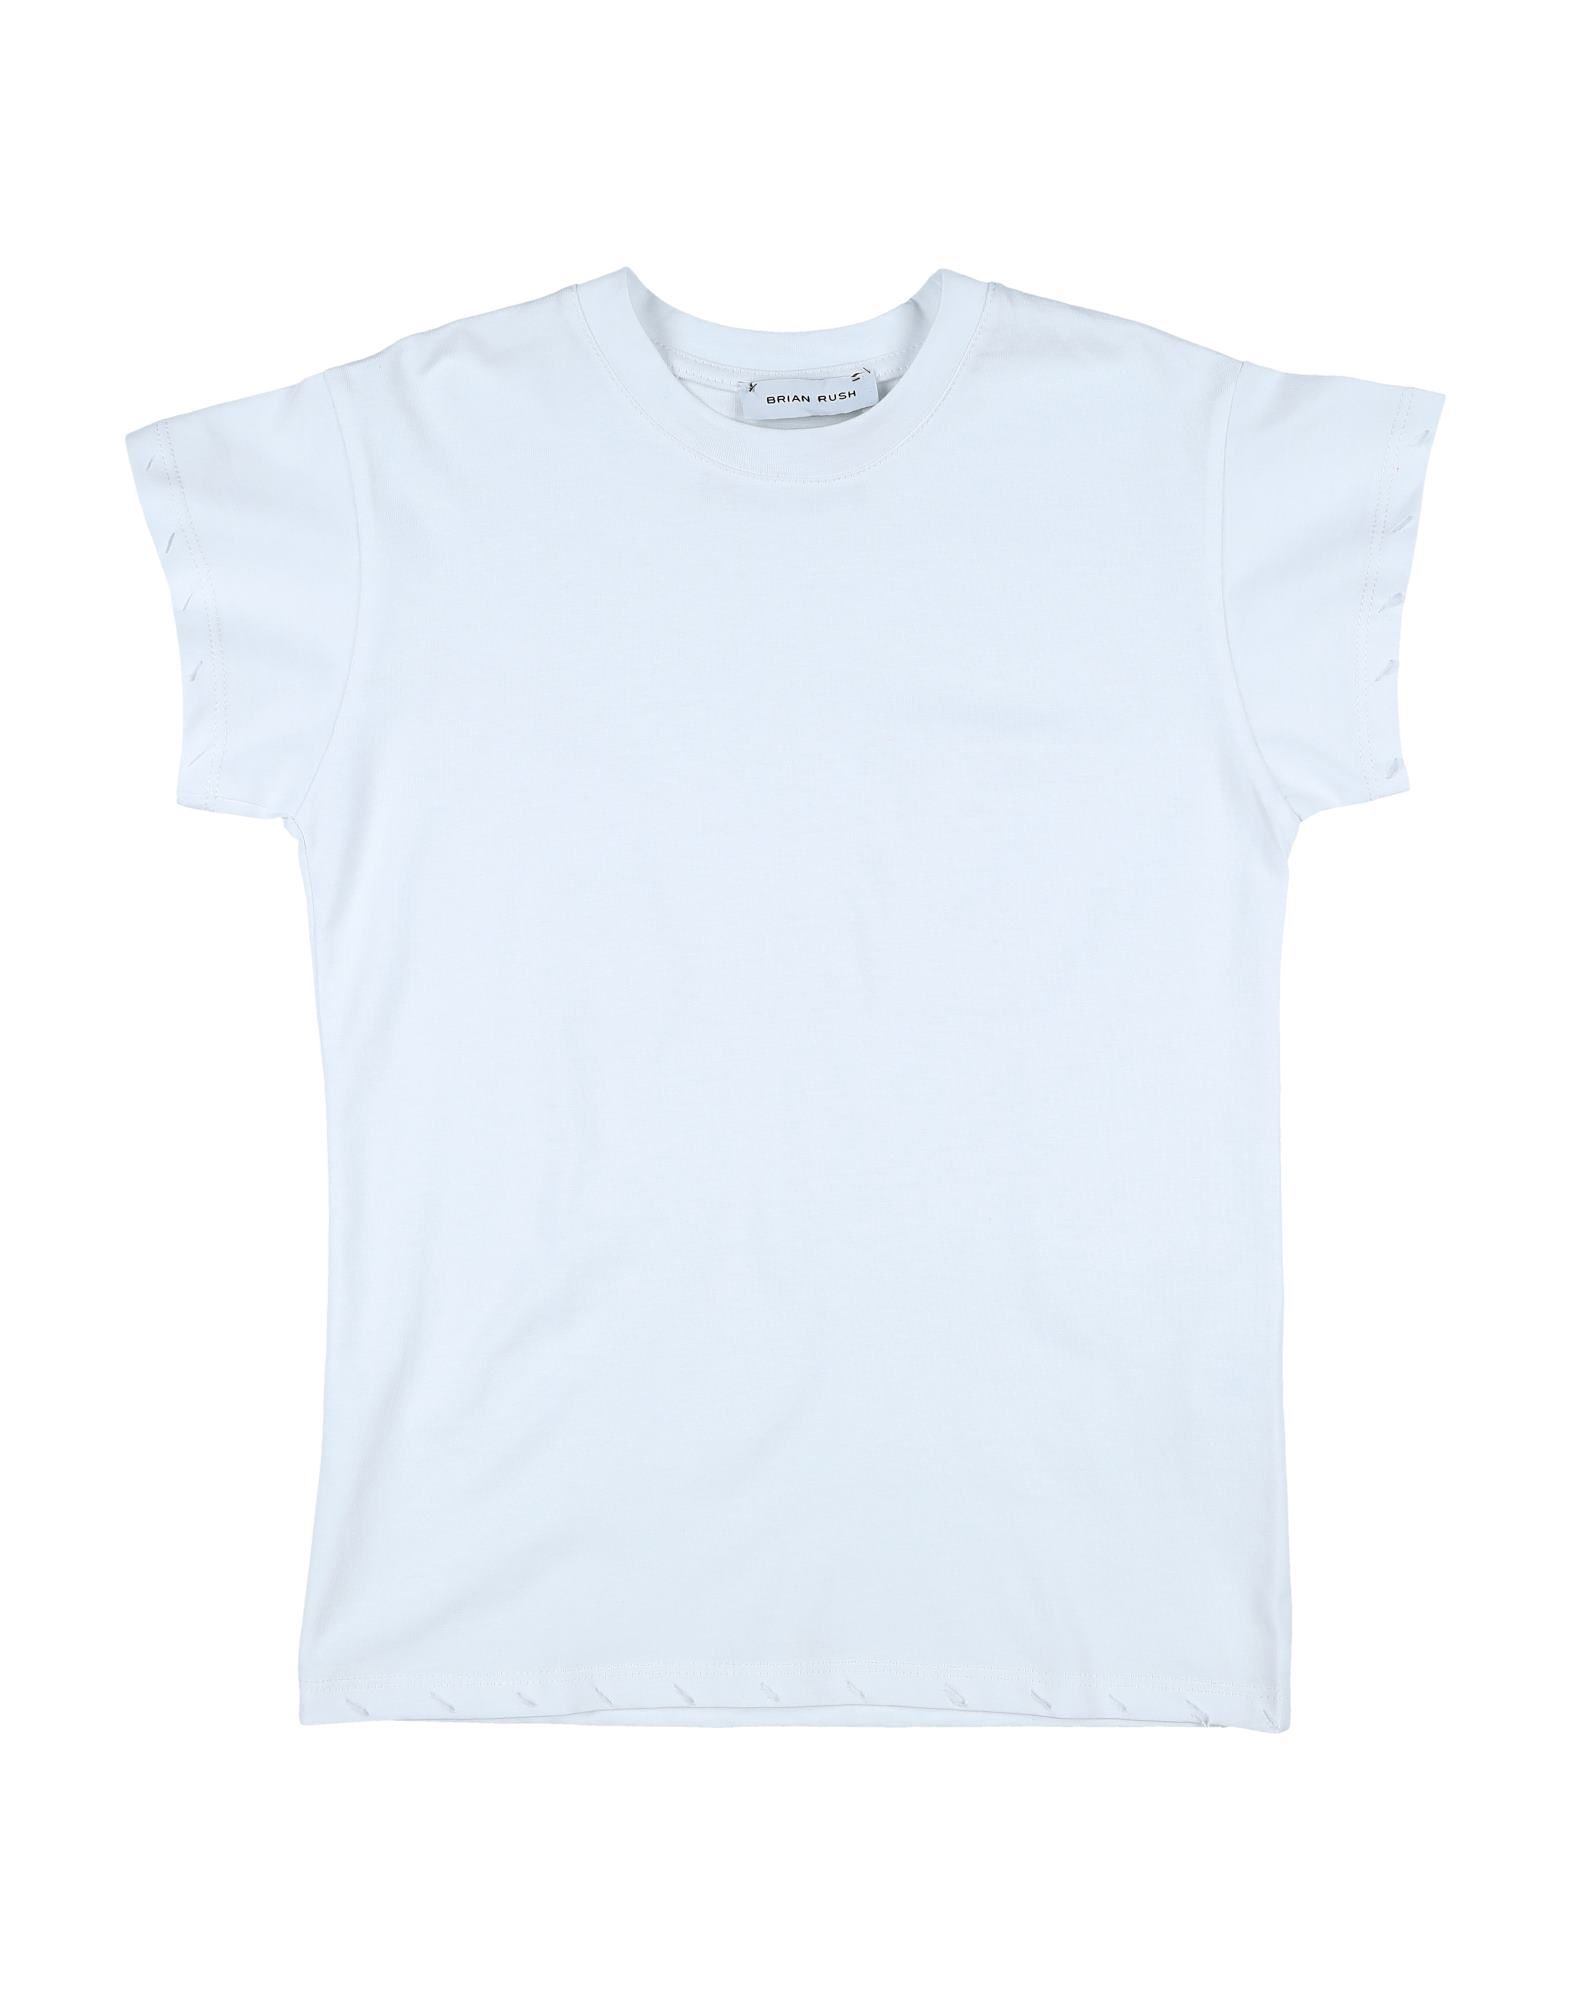 Brian Rush Kids' T-shirts In White